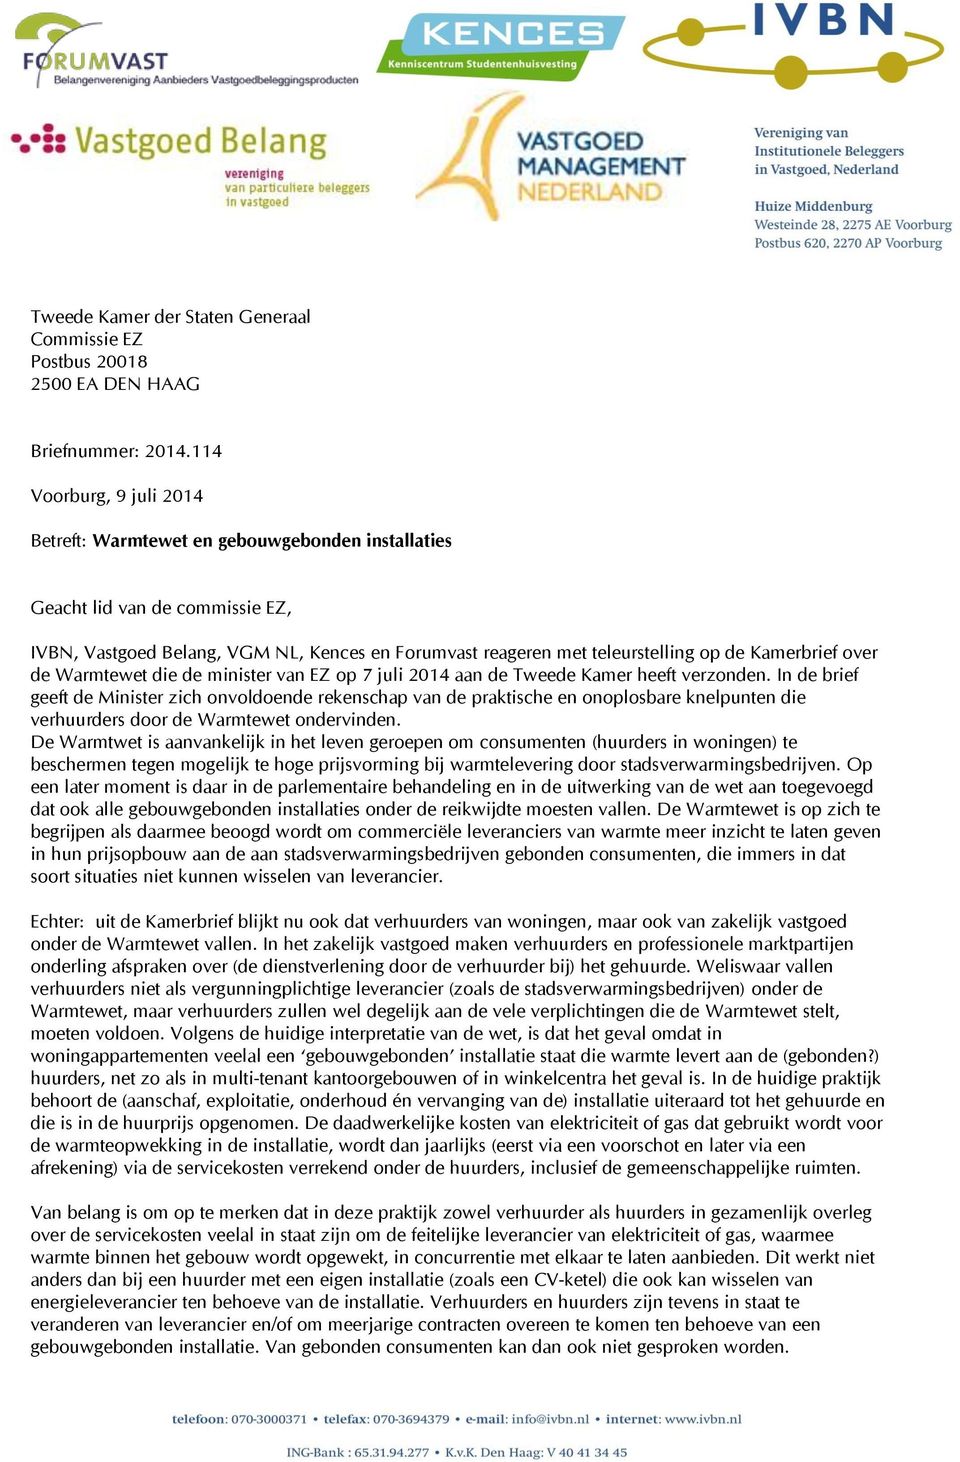 Kamerbrief over de Warmtewet die de minister van EZ op 7 juli 2014 aan de Tweede Kamer heeft verzonden.